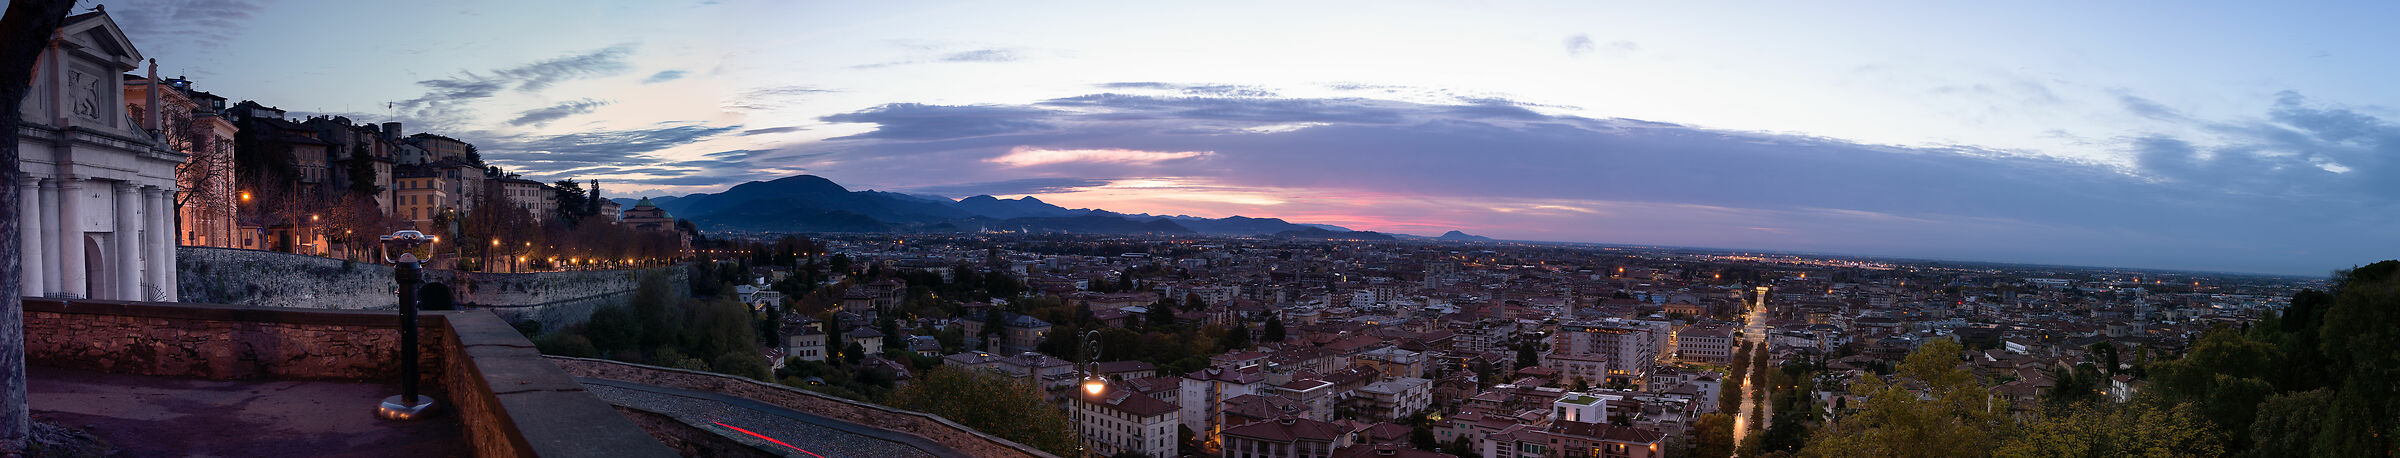 panorama of bergamo at dawn...